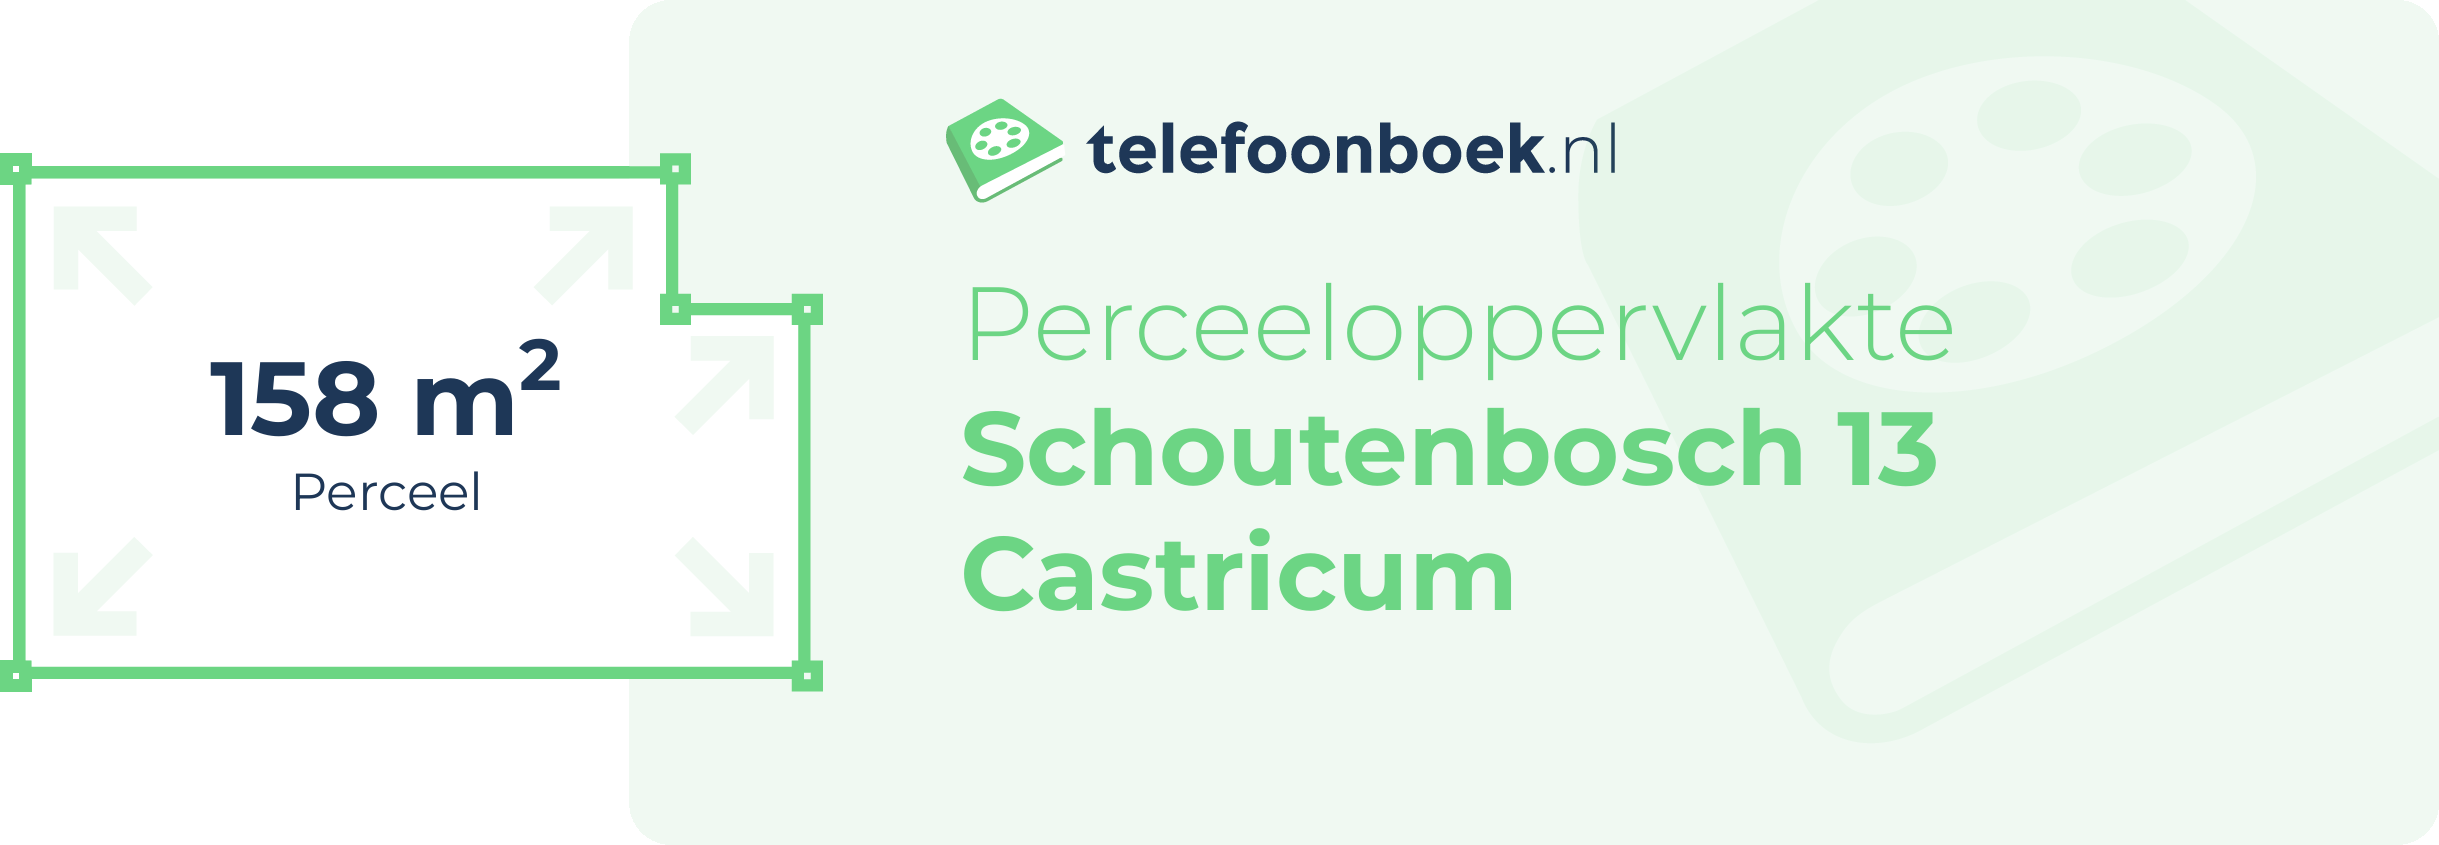 Perceeloppervlakte Schoutenbosch 13 Castricum